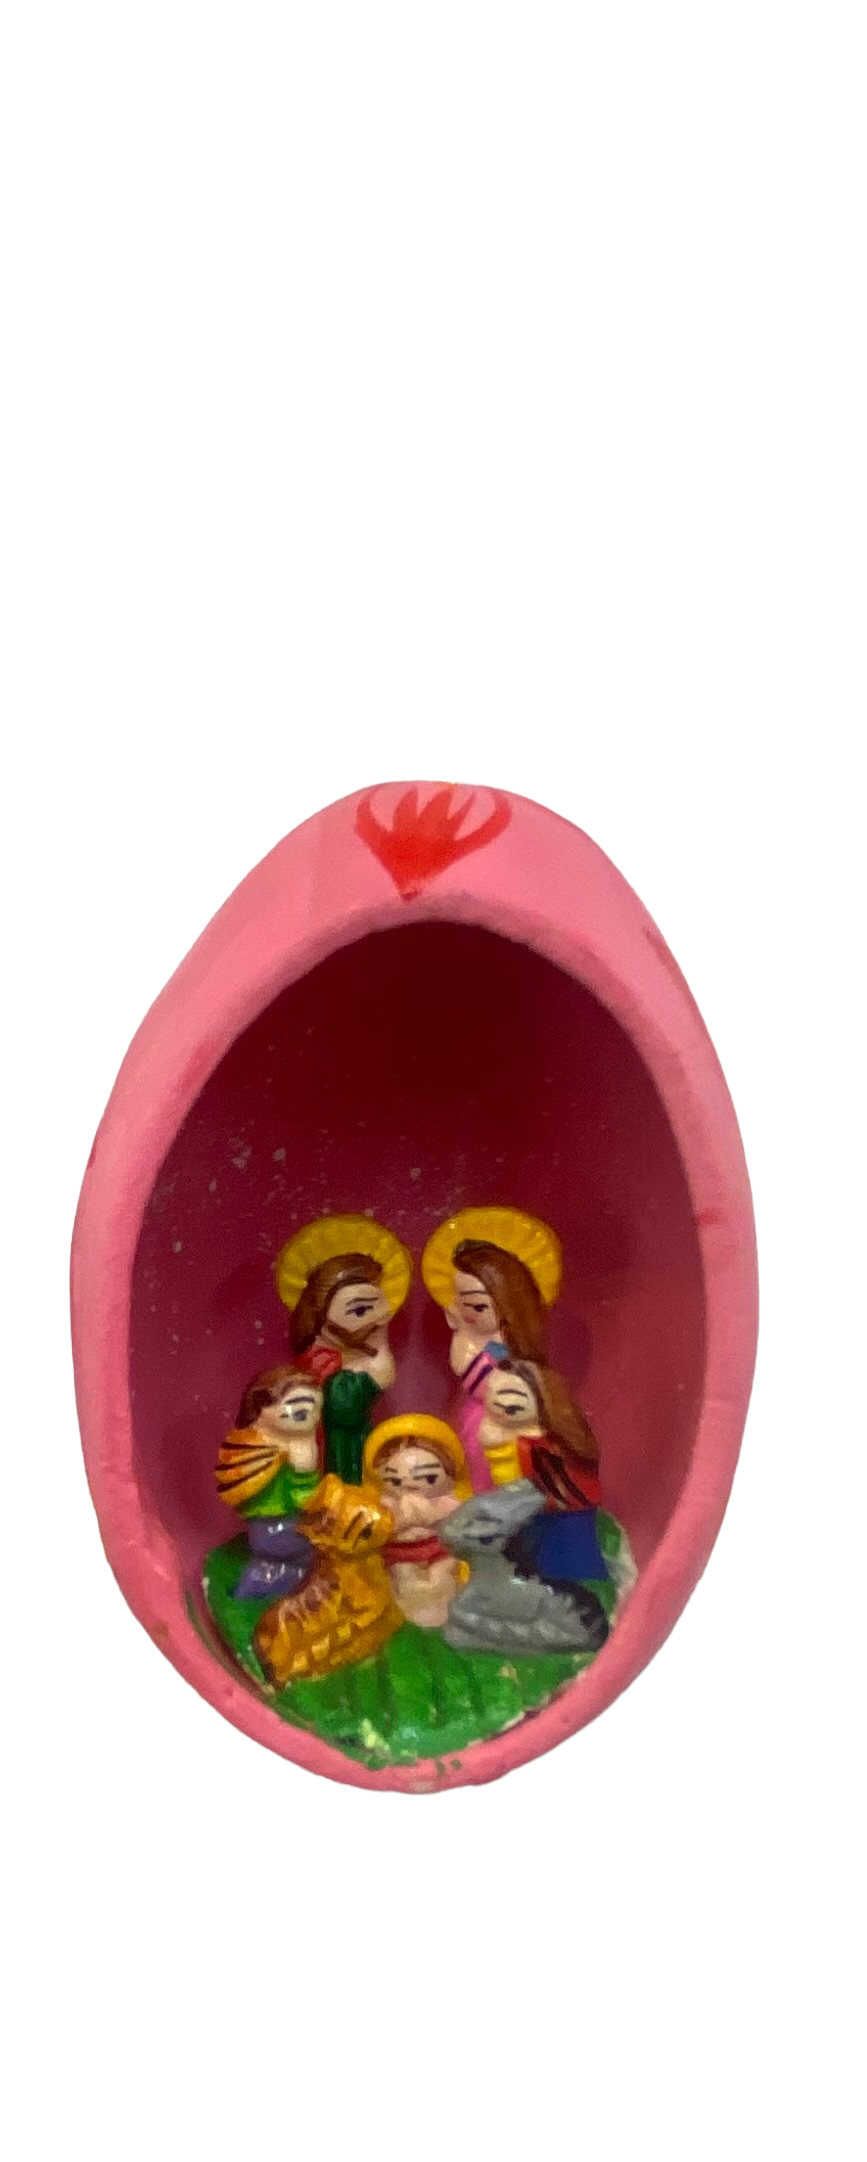 Egg ornaments